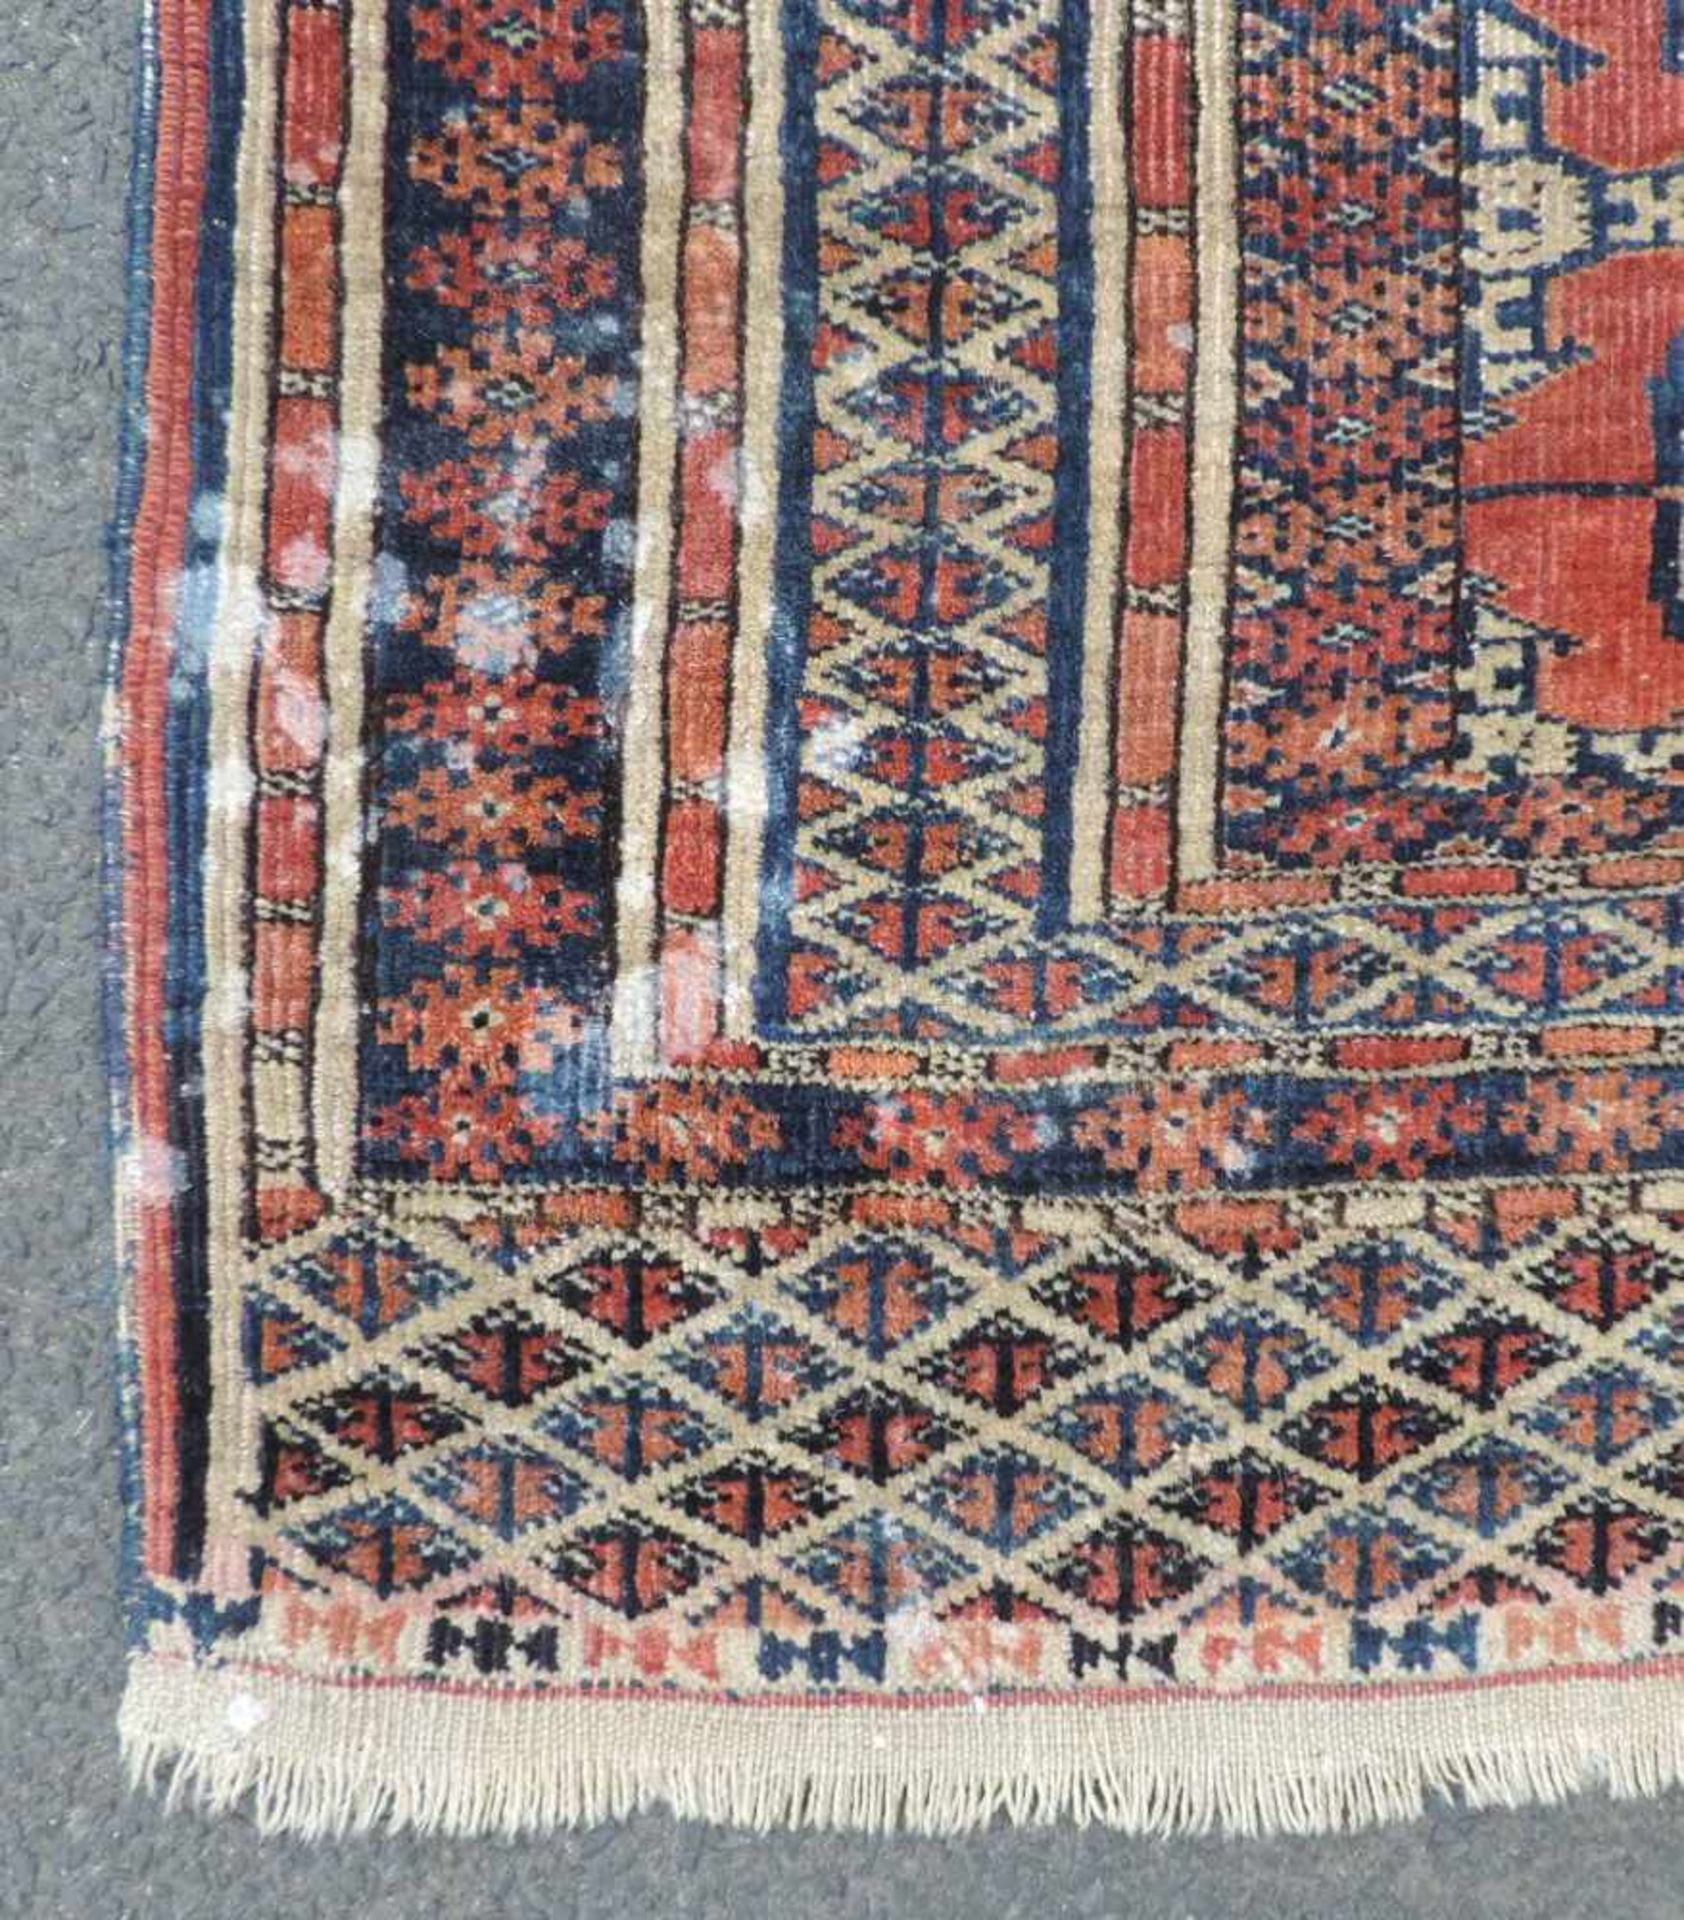 Turkoman Stammesteppich. Turkmenistan. Alt, um 1920. 148 cm x 107 cm. Handgeknüpft. Wolle auf Wolle. - Image 4 of 6